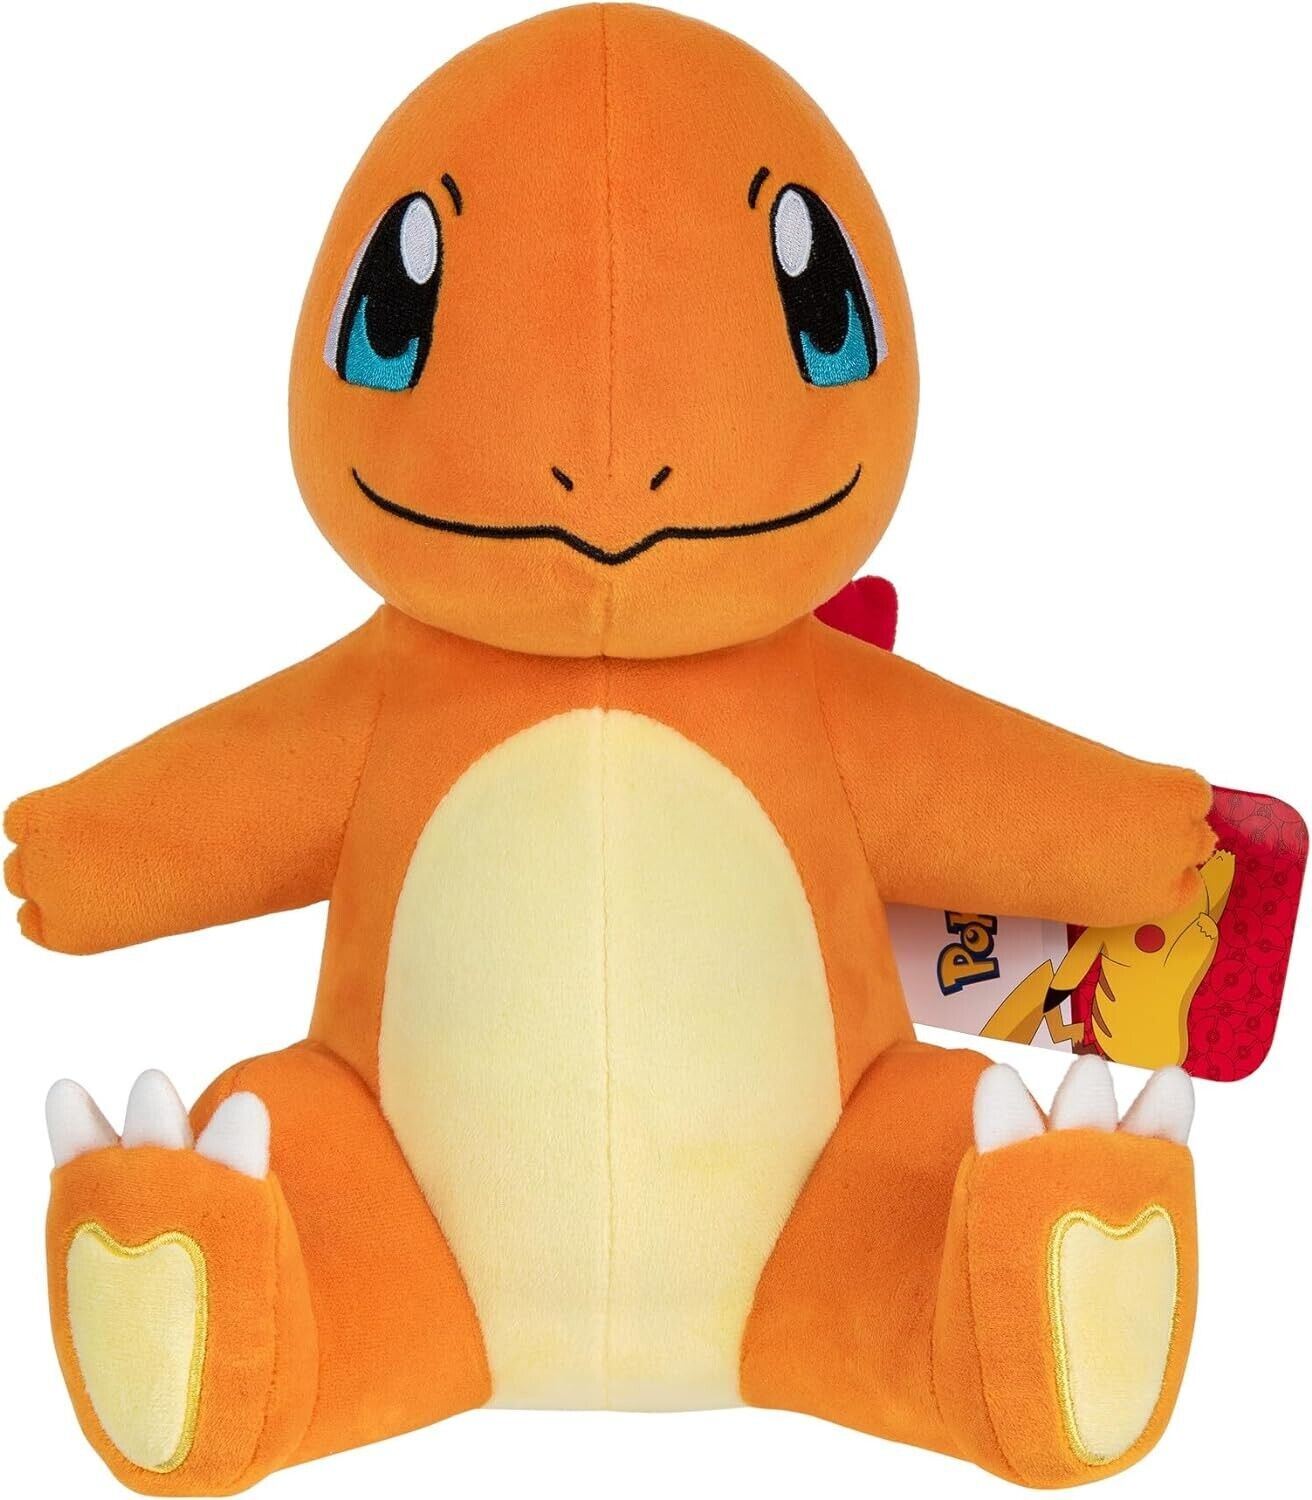 Pokémon PKW3110 Official & Premium Quality 12-inch Charmander Adorable